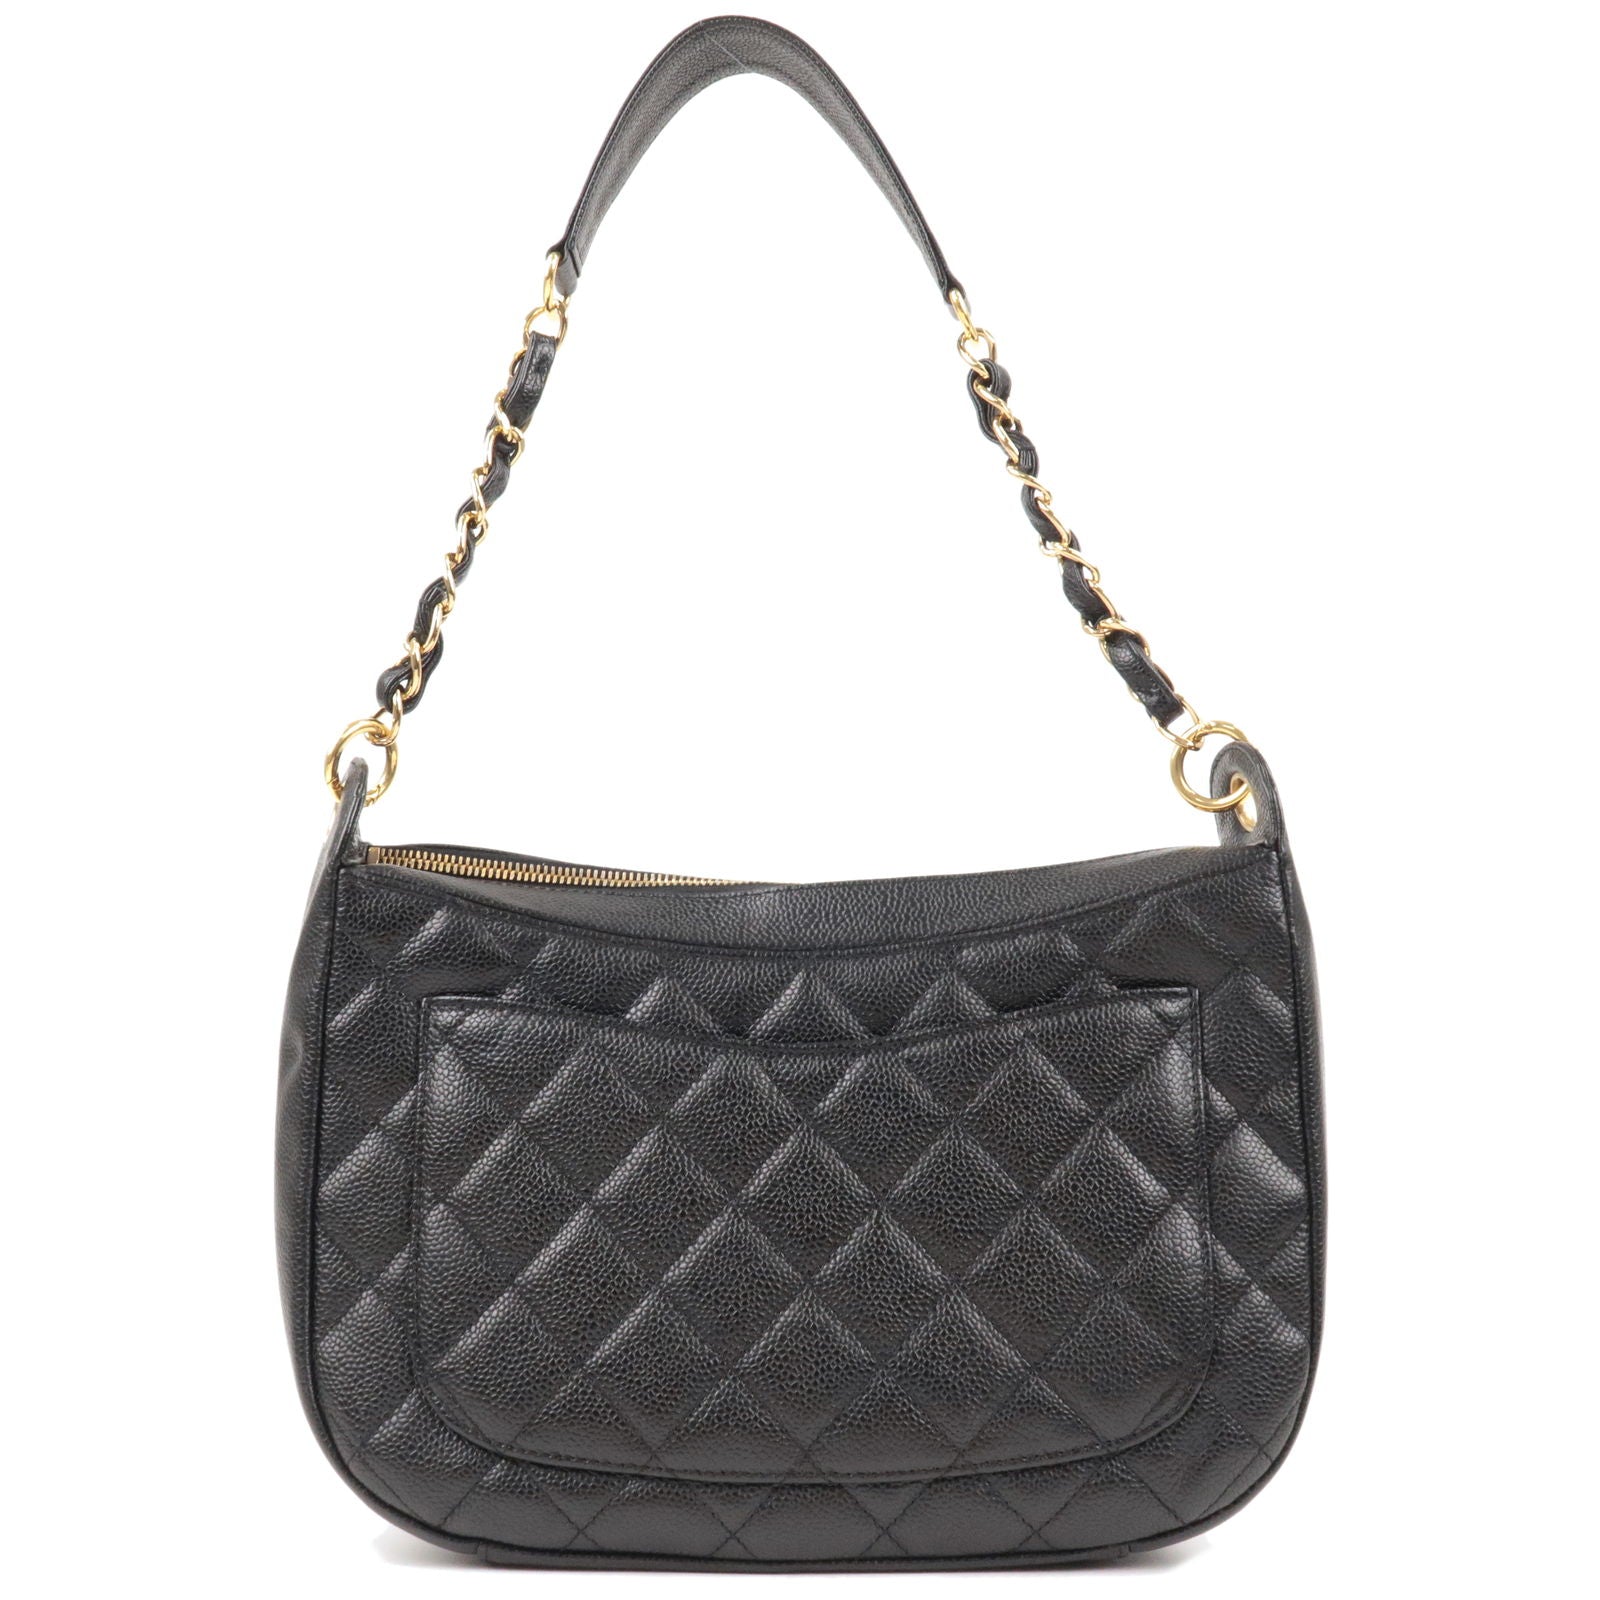 CHANEL Bag Shoulder bag Black Leather Matelasse CC logo